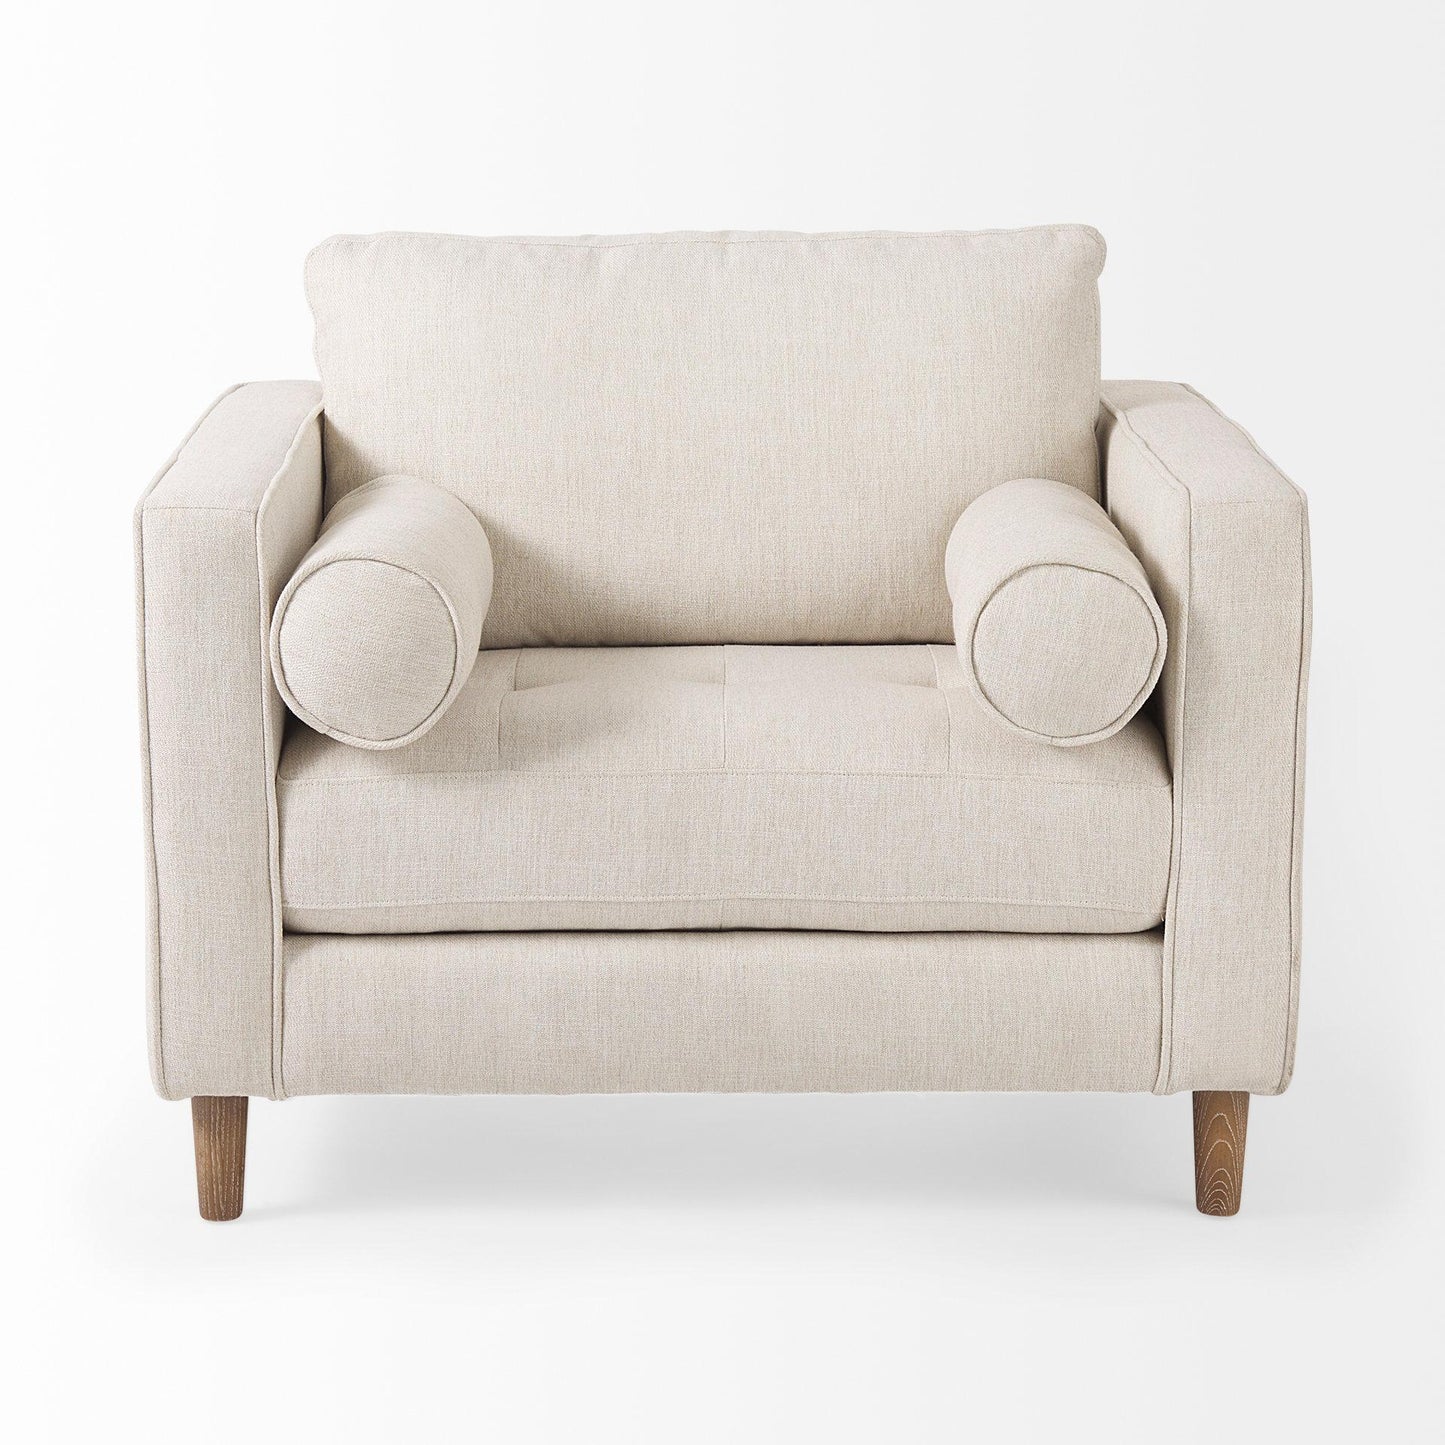 Loretta 40.7L x 36.2W x 33.9H Cream Fabric Chair W/ Two Bolster Cushions